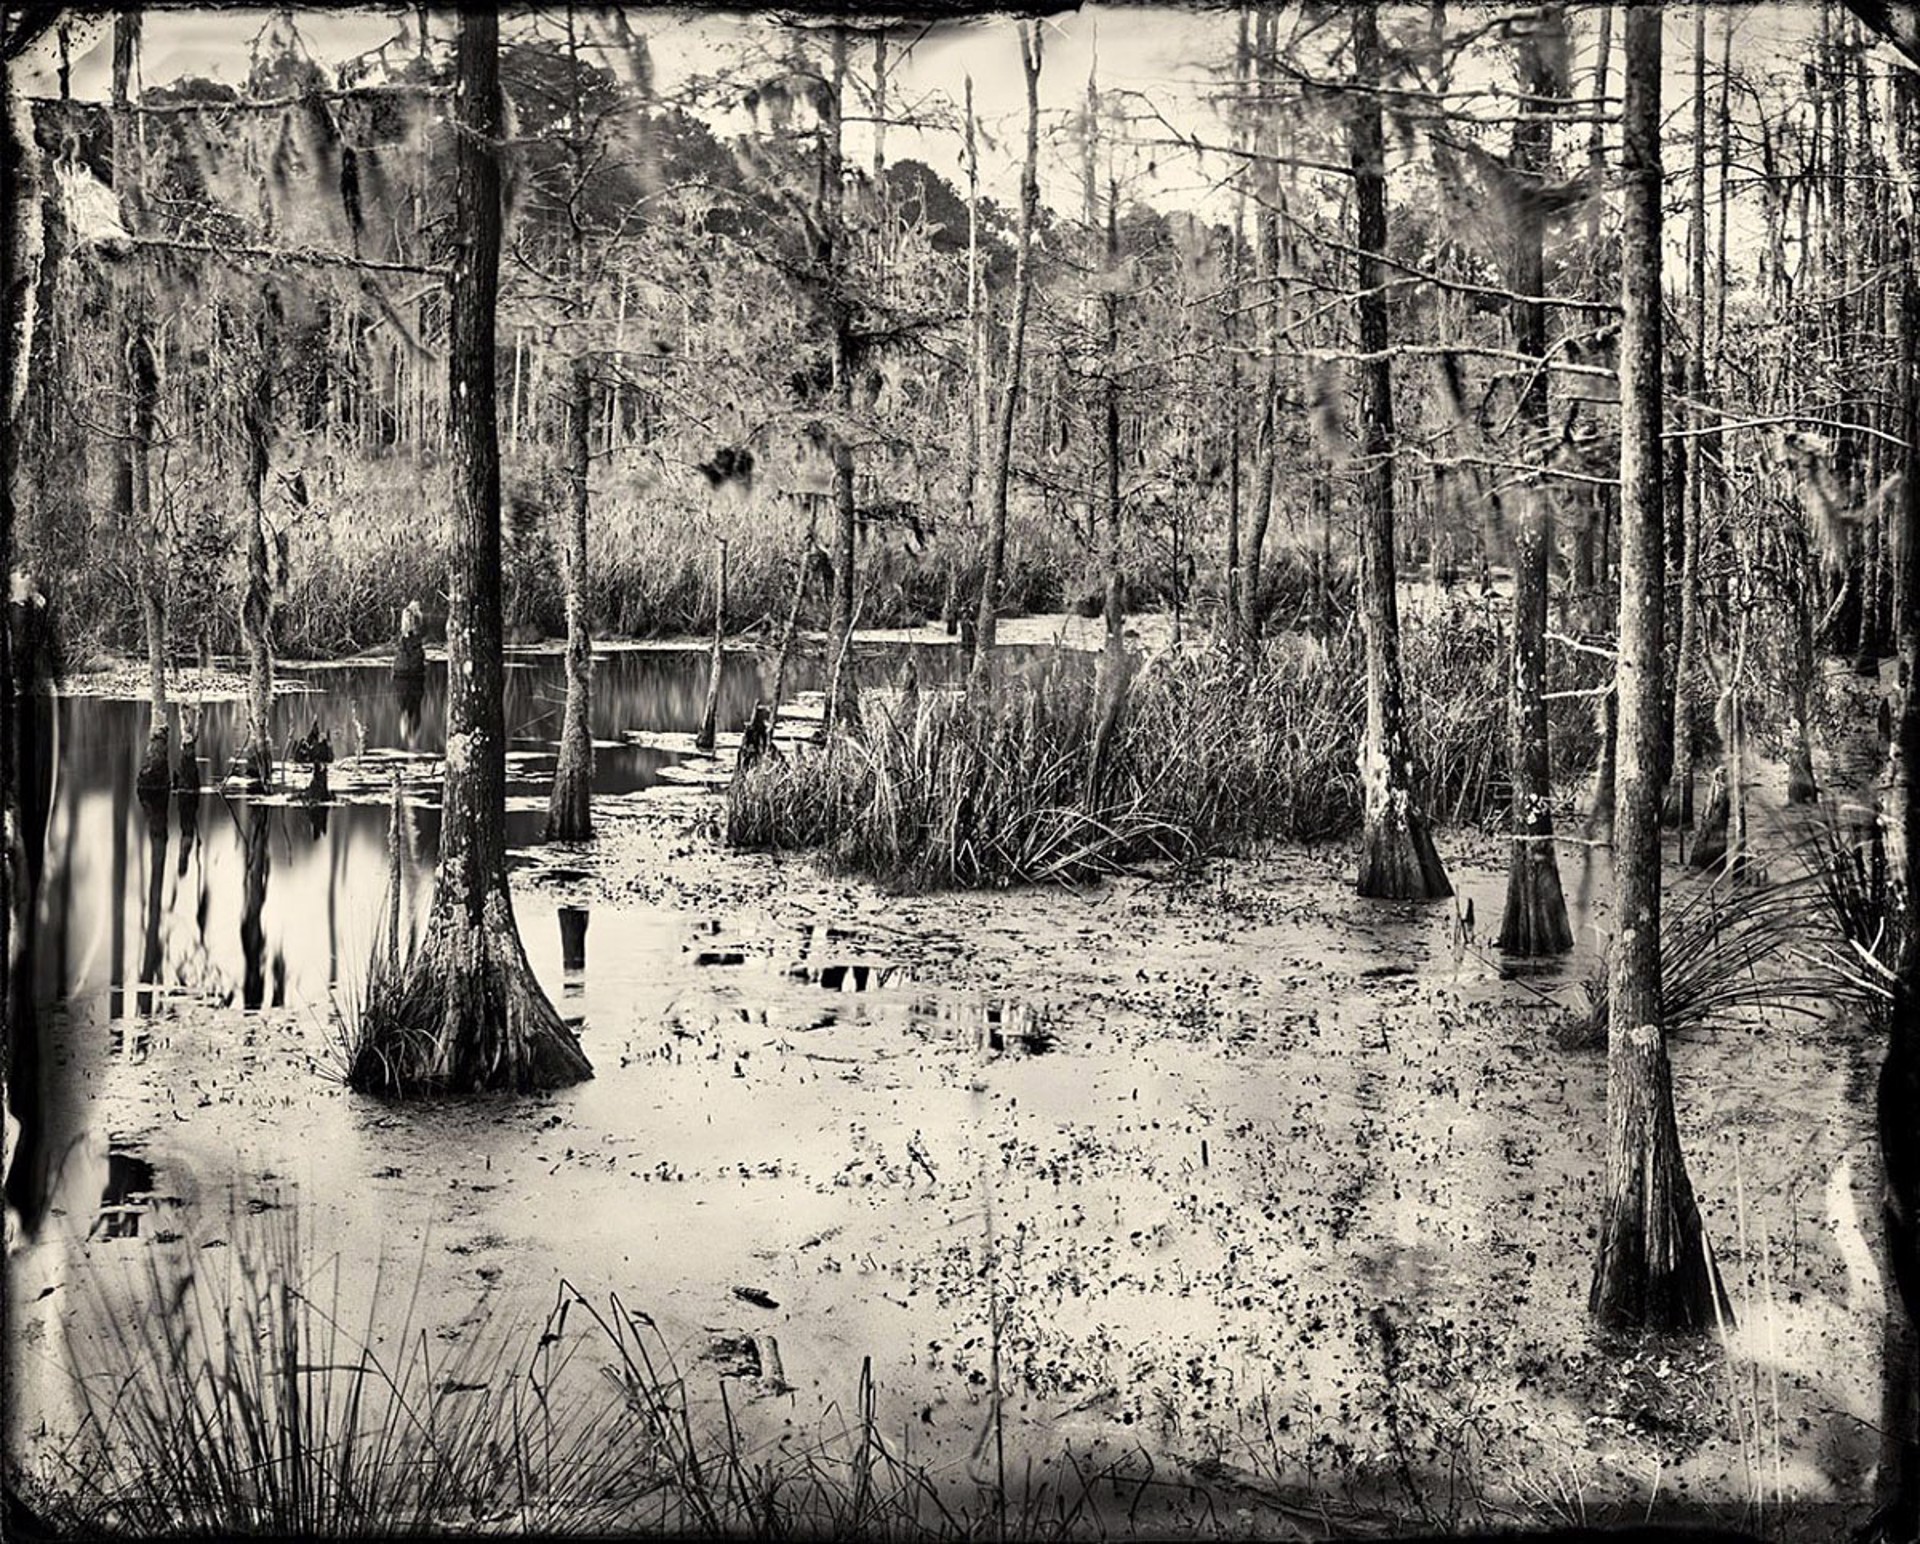 Swamp Water 1 by Ben Nixon